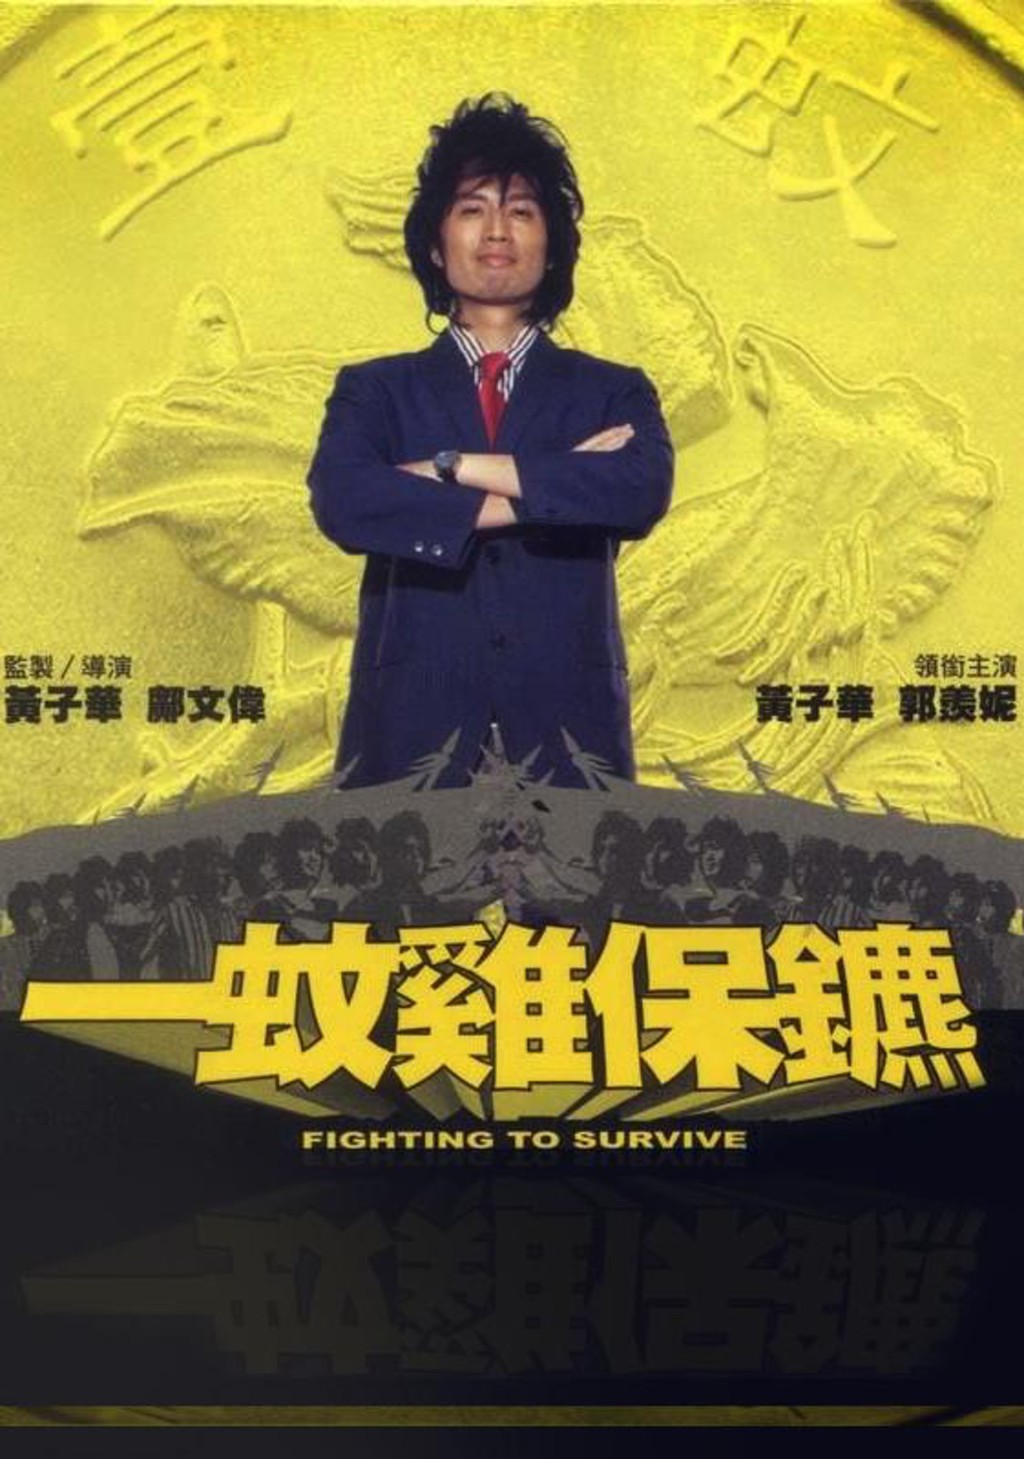 黄子华曾自编自导自演电影《一蚊鸡保镳》。